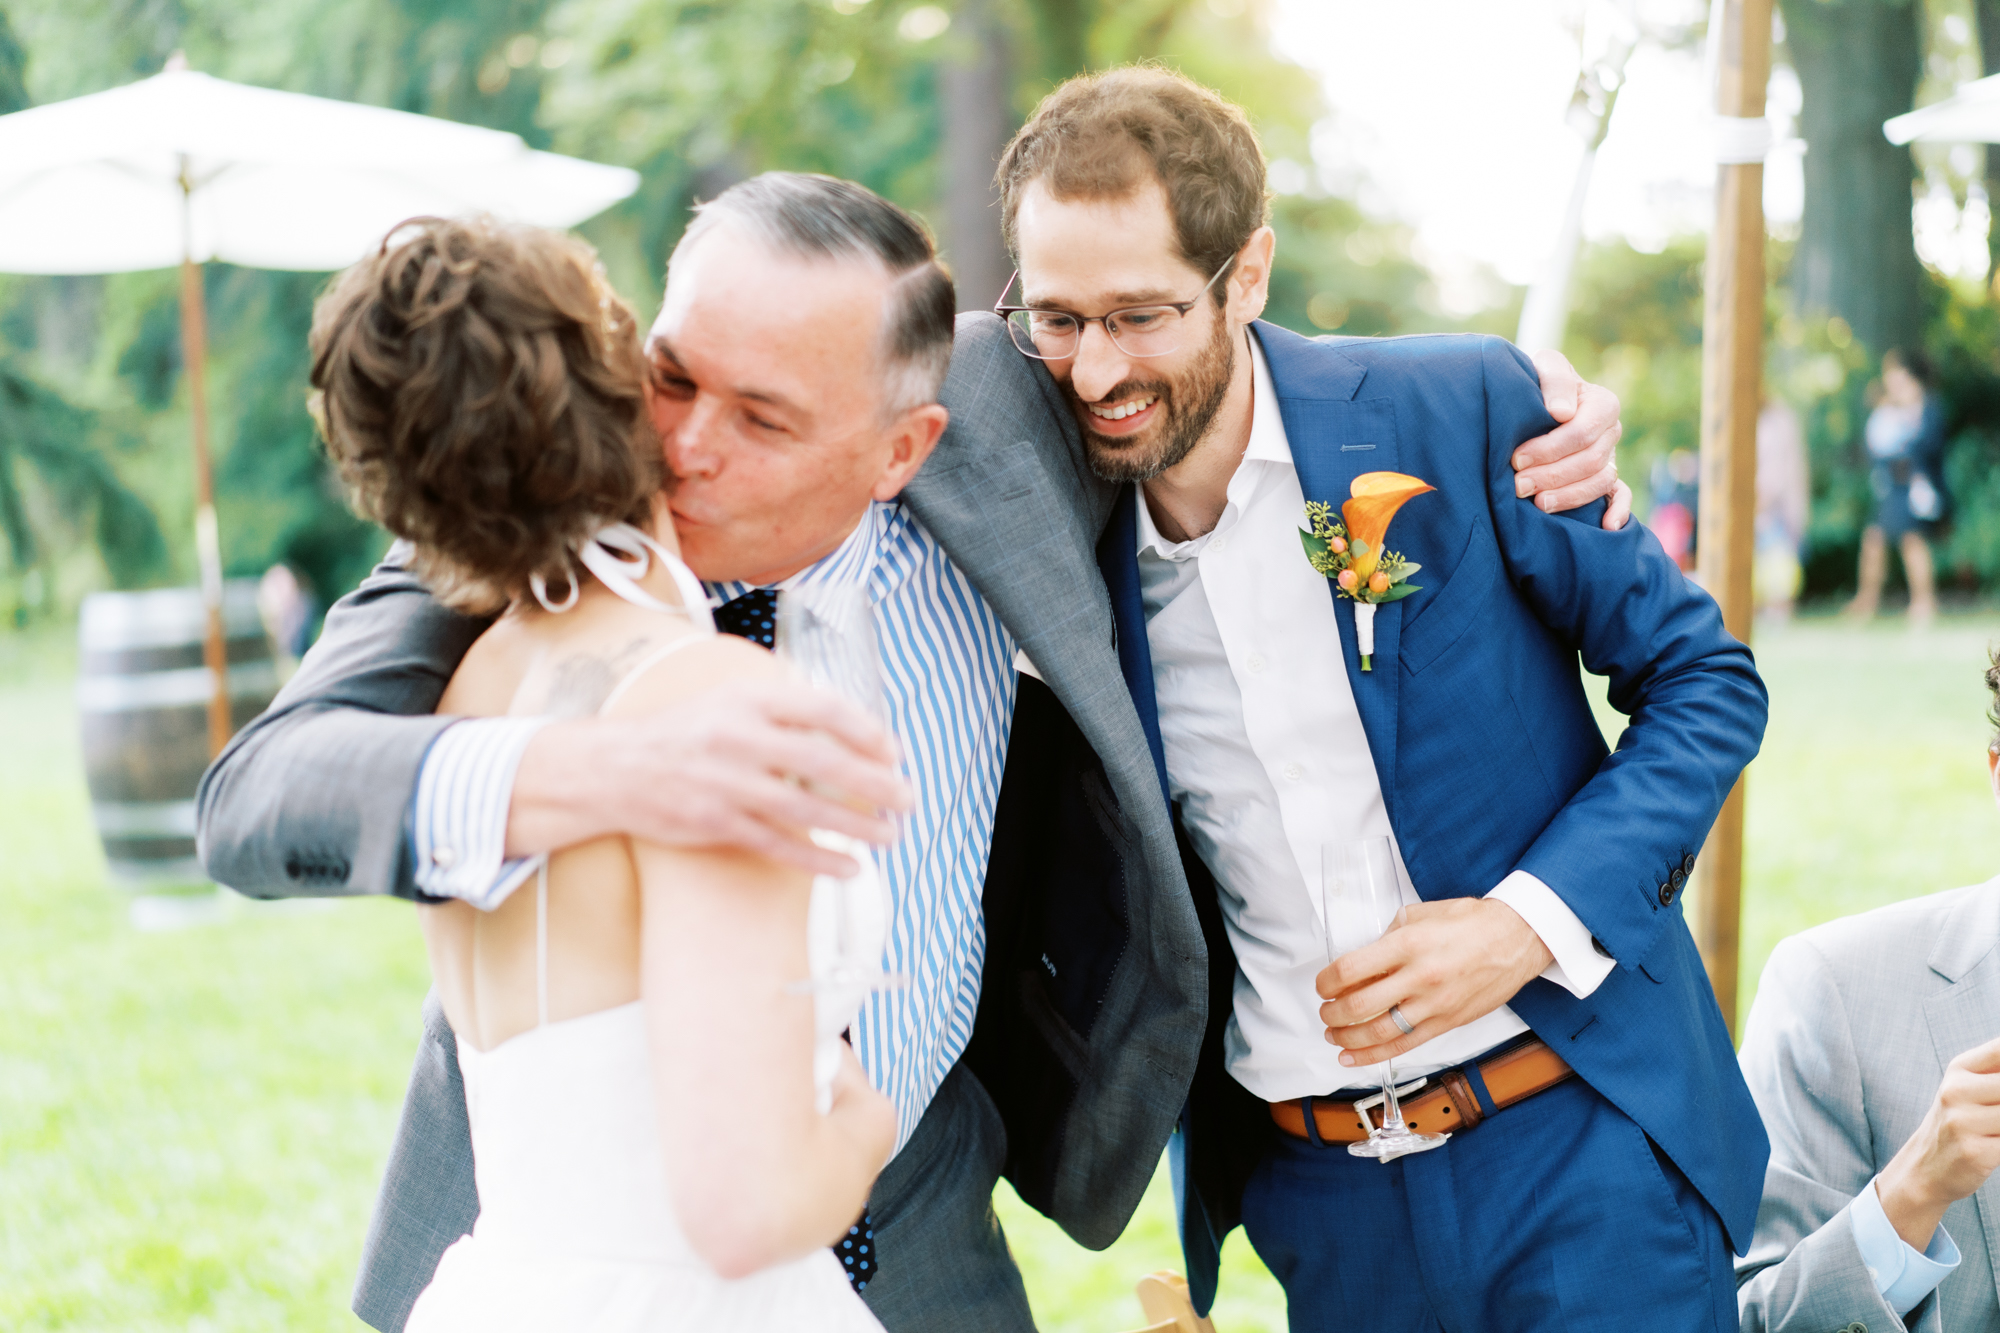 Dunn Gardens Weddings: Toast moments